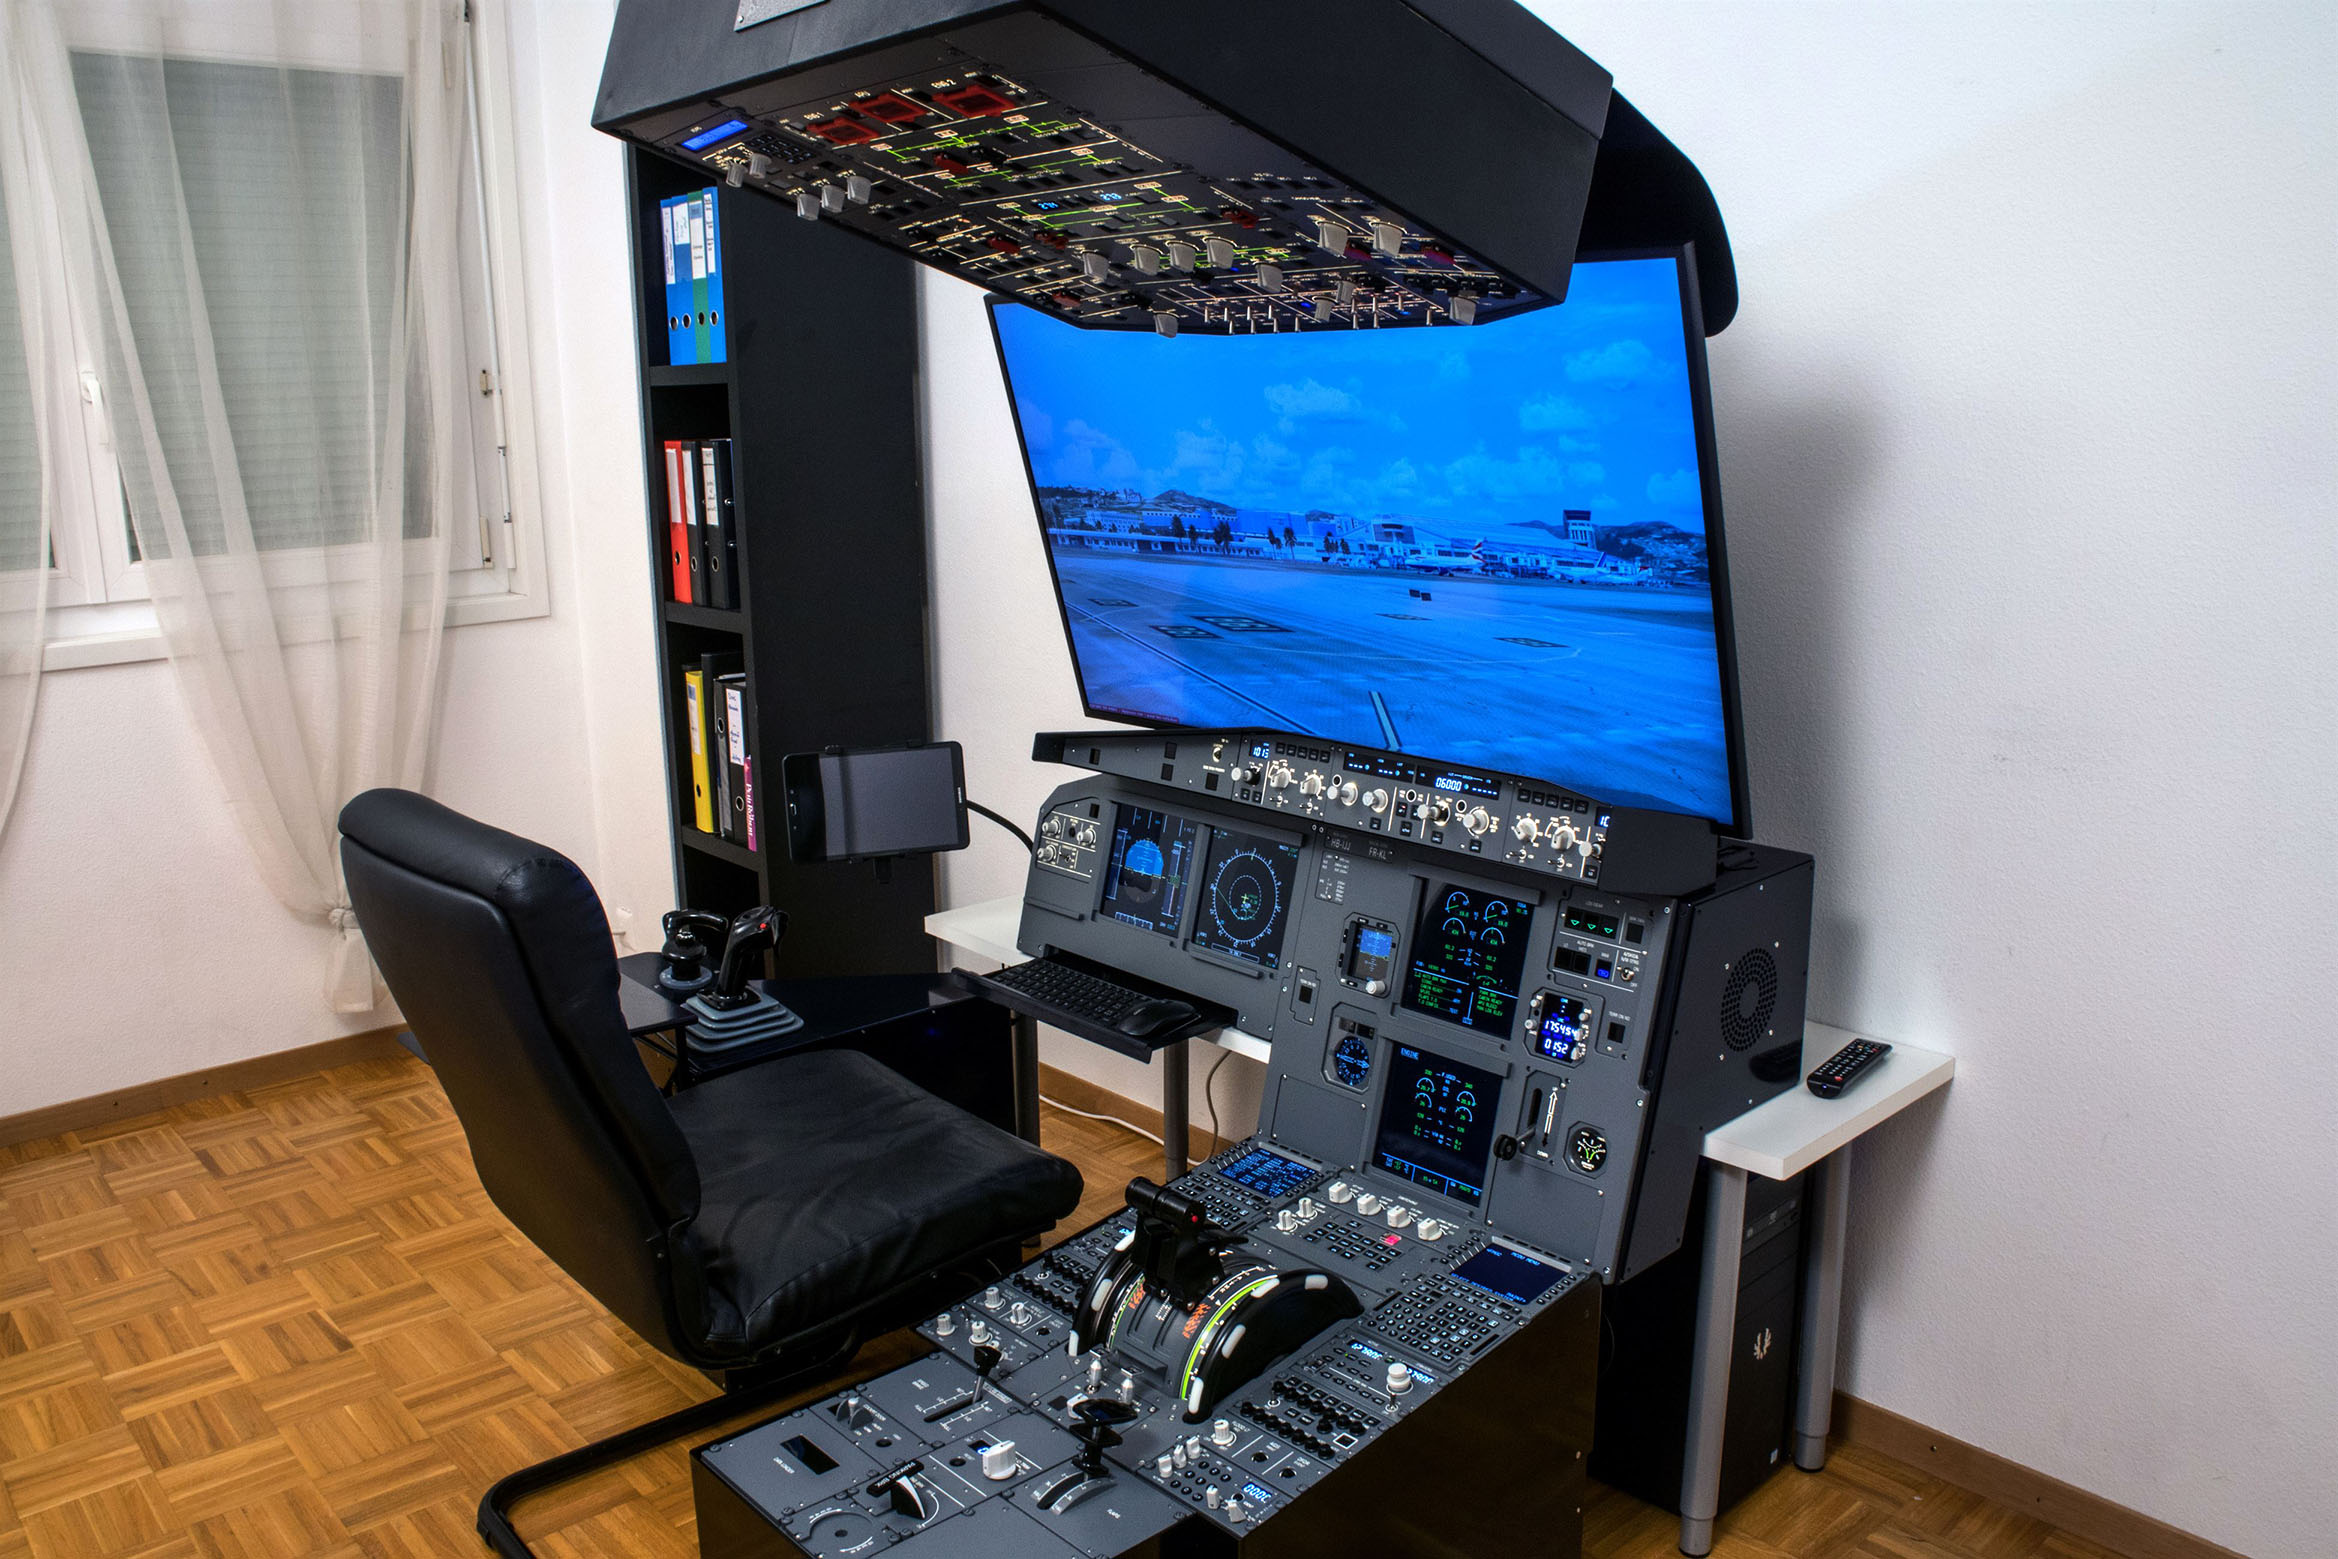 Flight-Link Helicopter Simulator – NewConcept Informatique